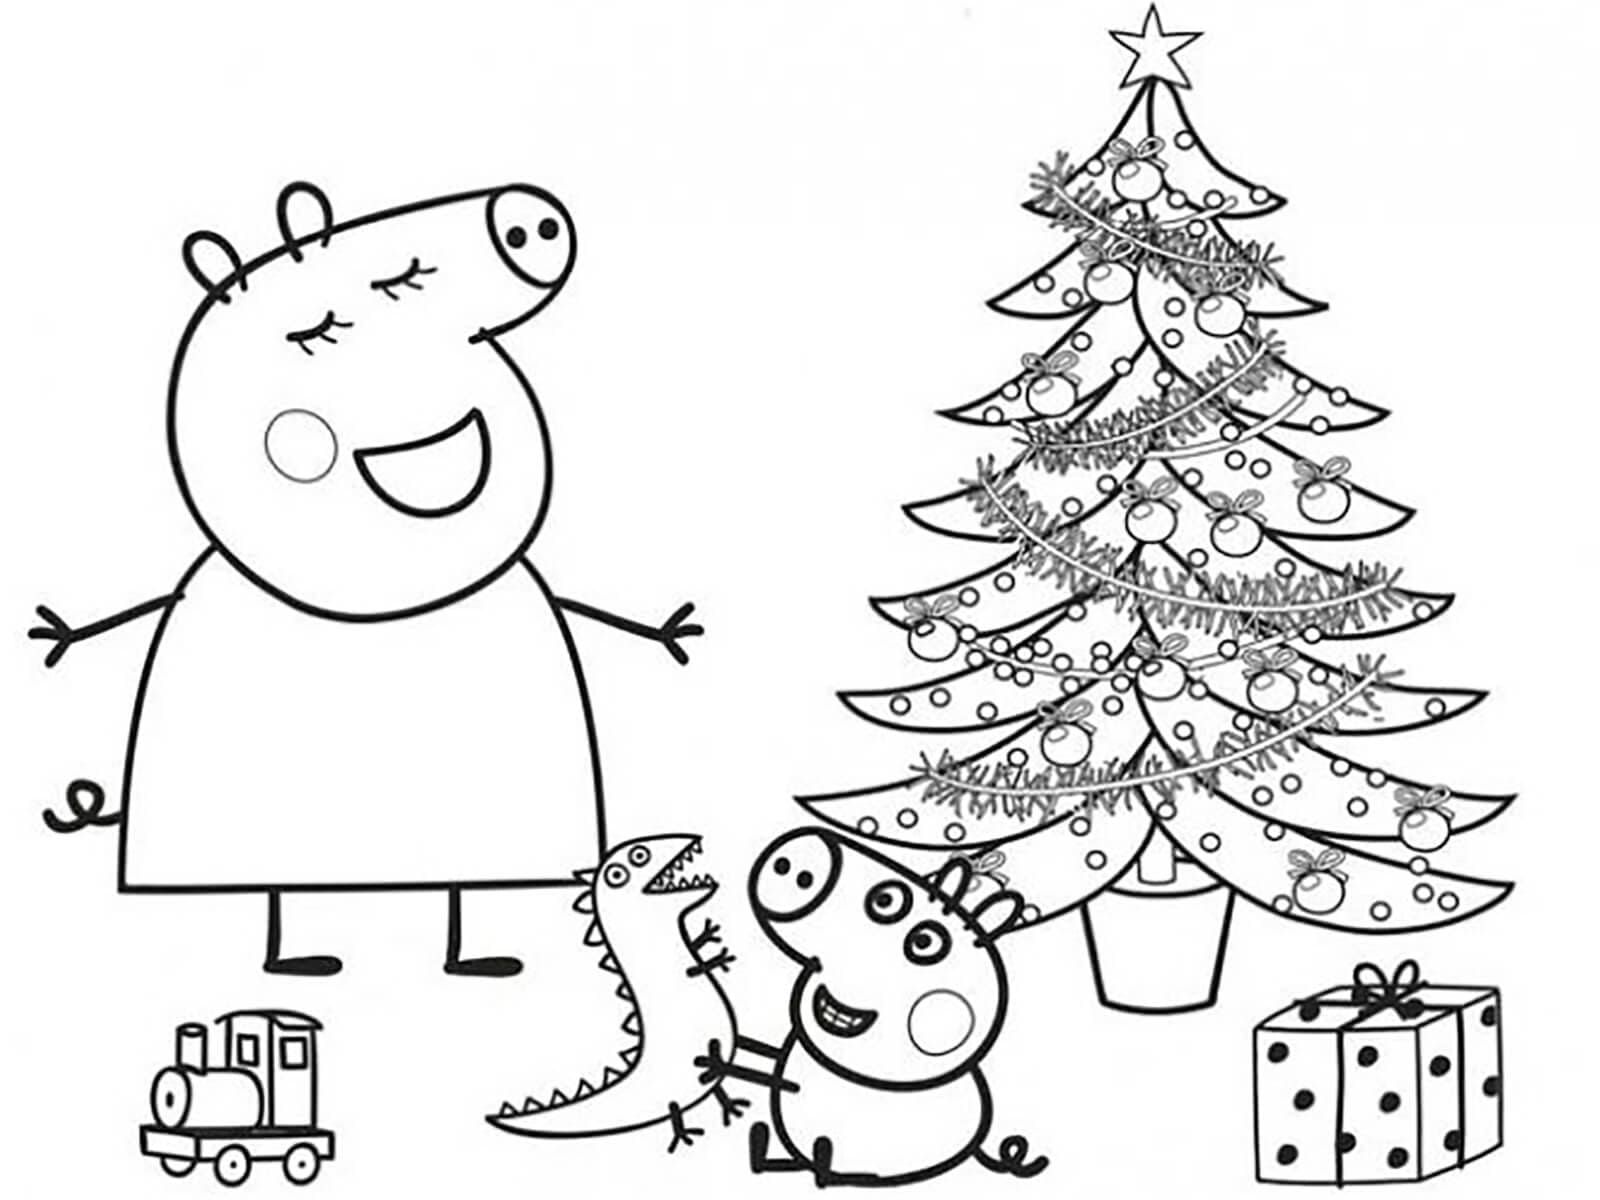 Vẽ đẹp của Peppa Pig để vẽ trong ngày Giáng sinh